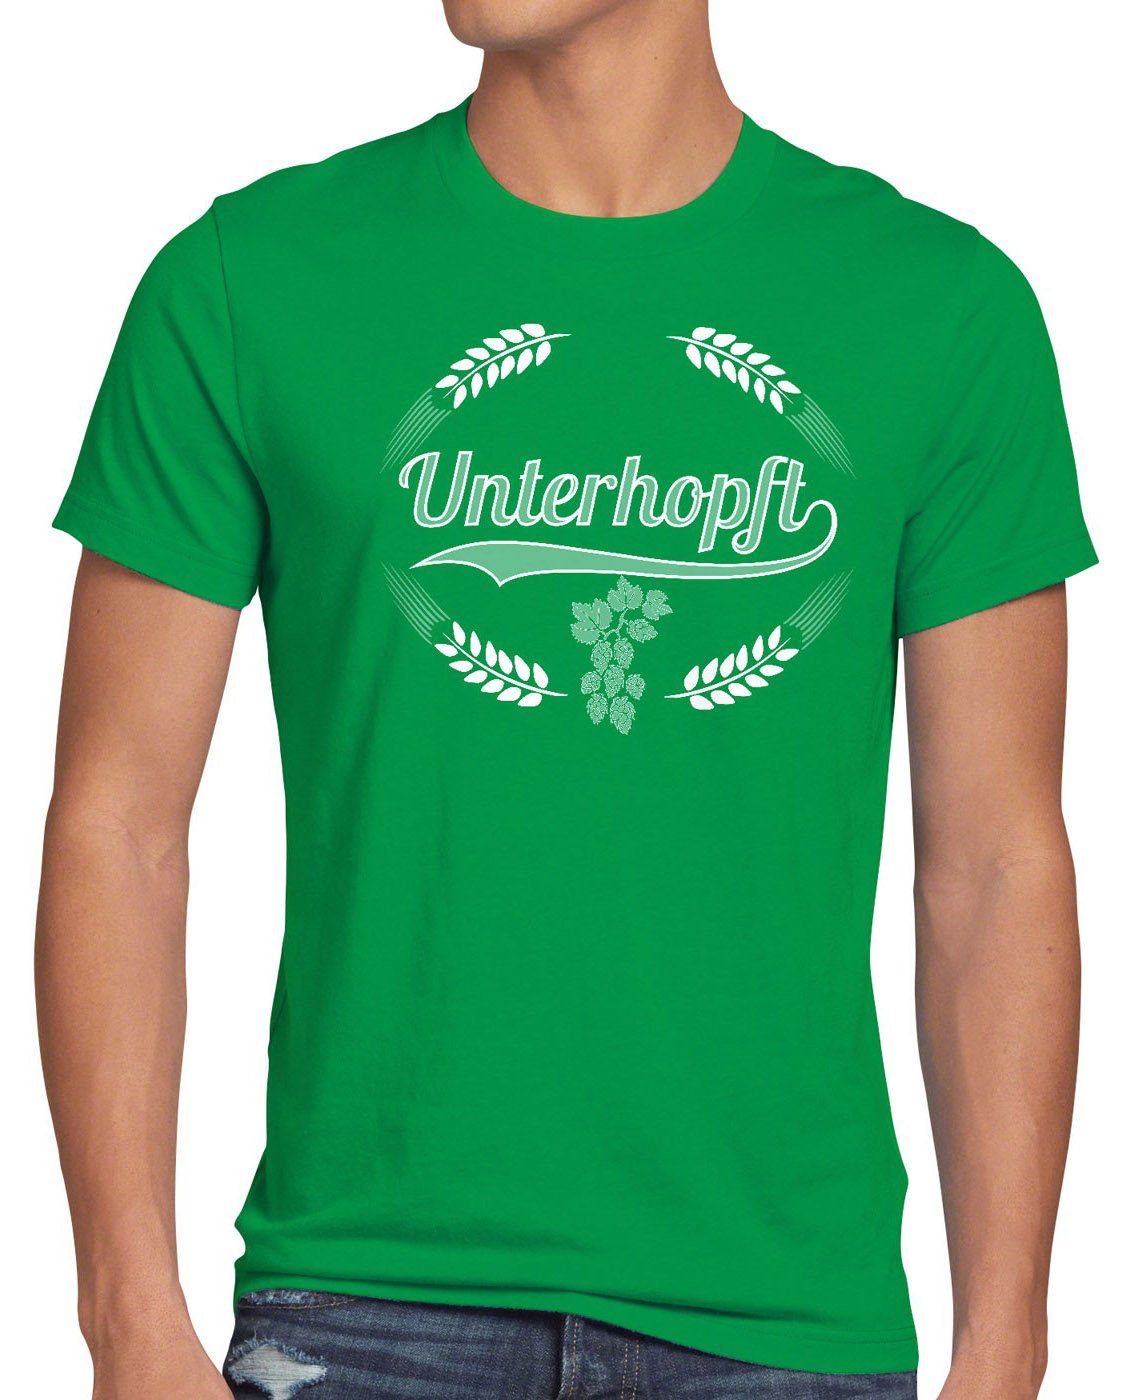 Kult Bier grün Fest Funshirt style3 Spruch Print-Shirt Fun Hopfen Shirt Herren Malz Unterhopft T-Shirt